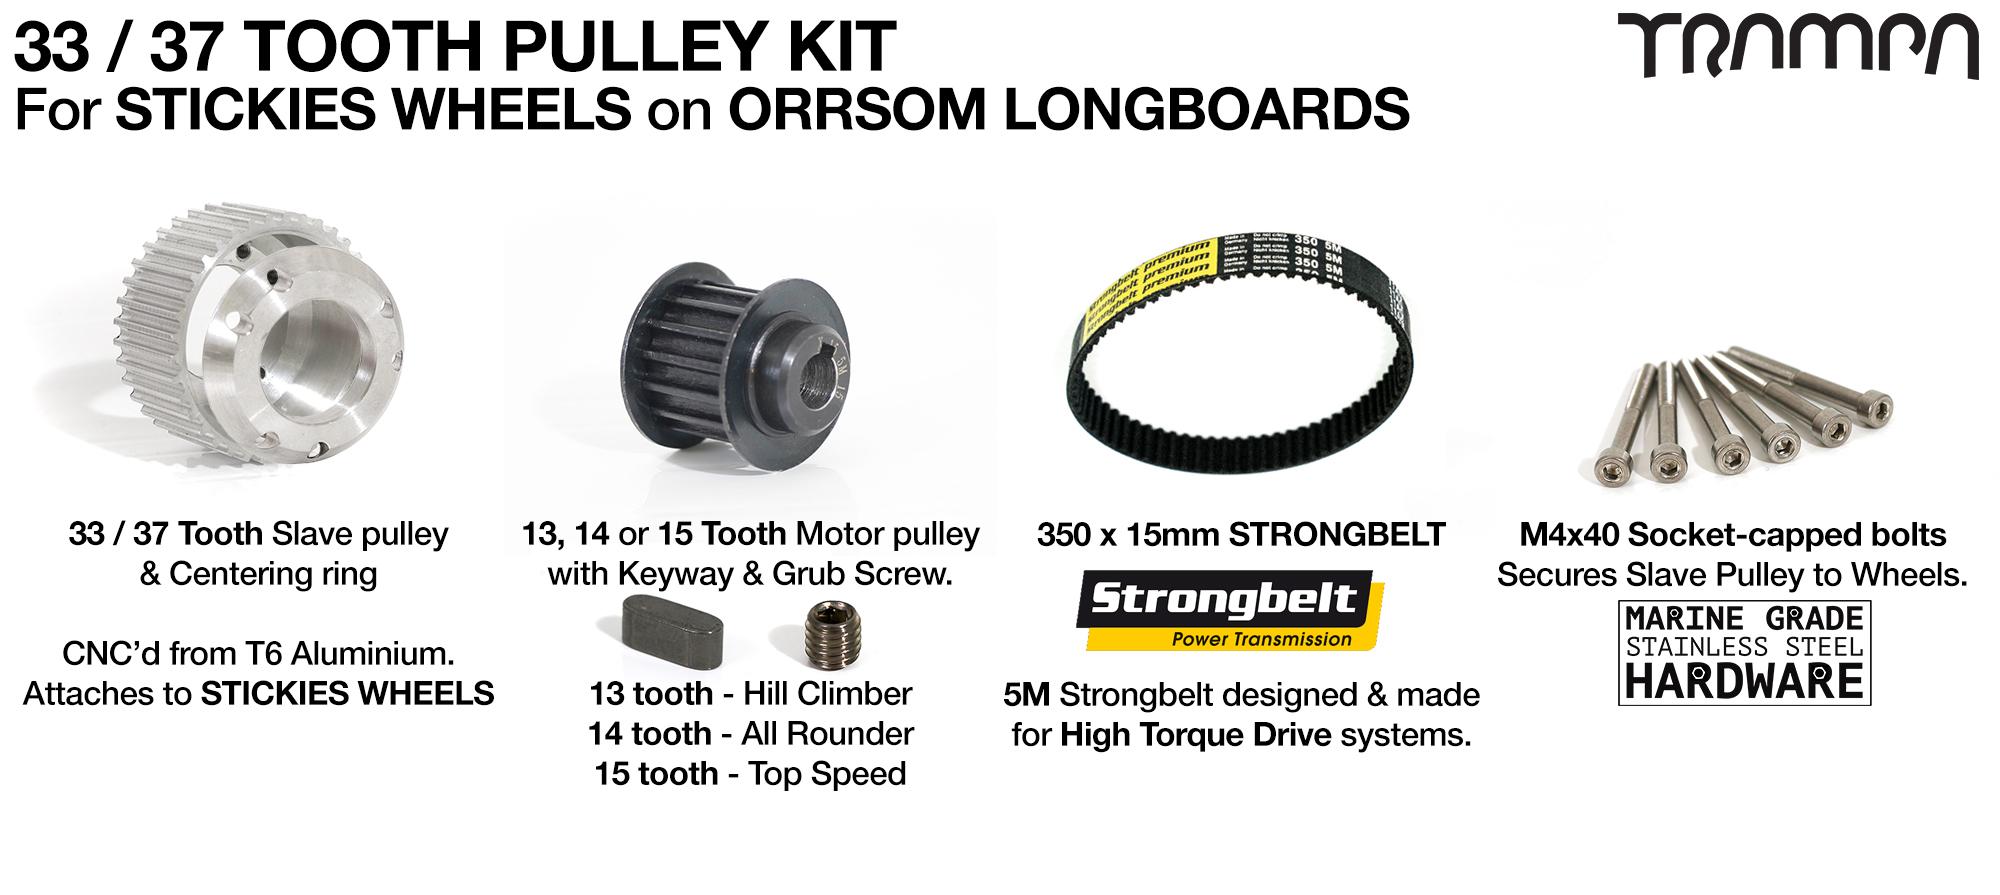 12FiFties Trucks ORRSOM Longboard 33/37 Tooth Pulley Kit & 330x15mm Belt to fit STICKIES Wheels